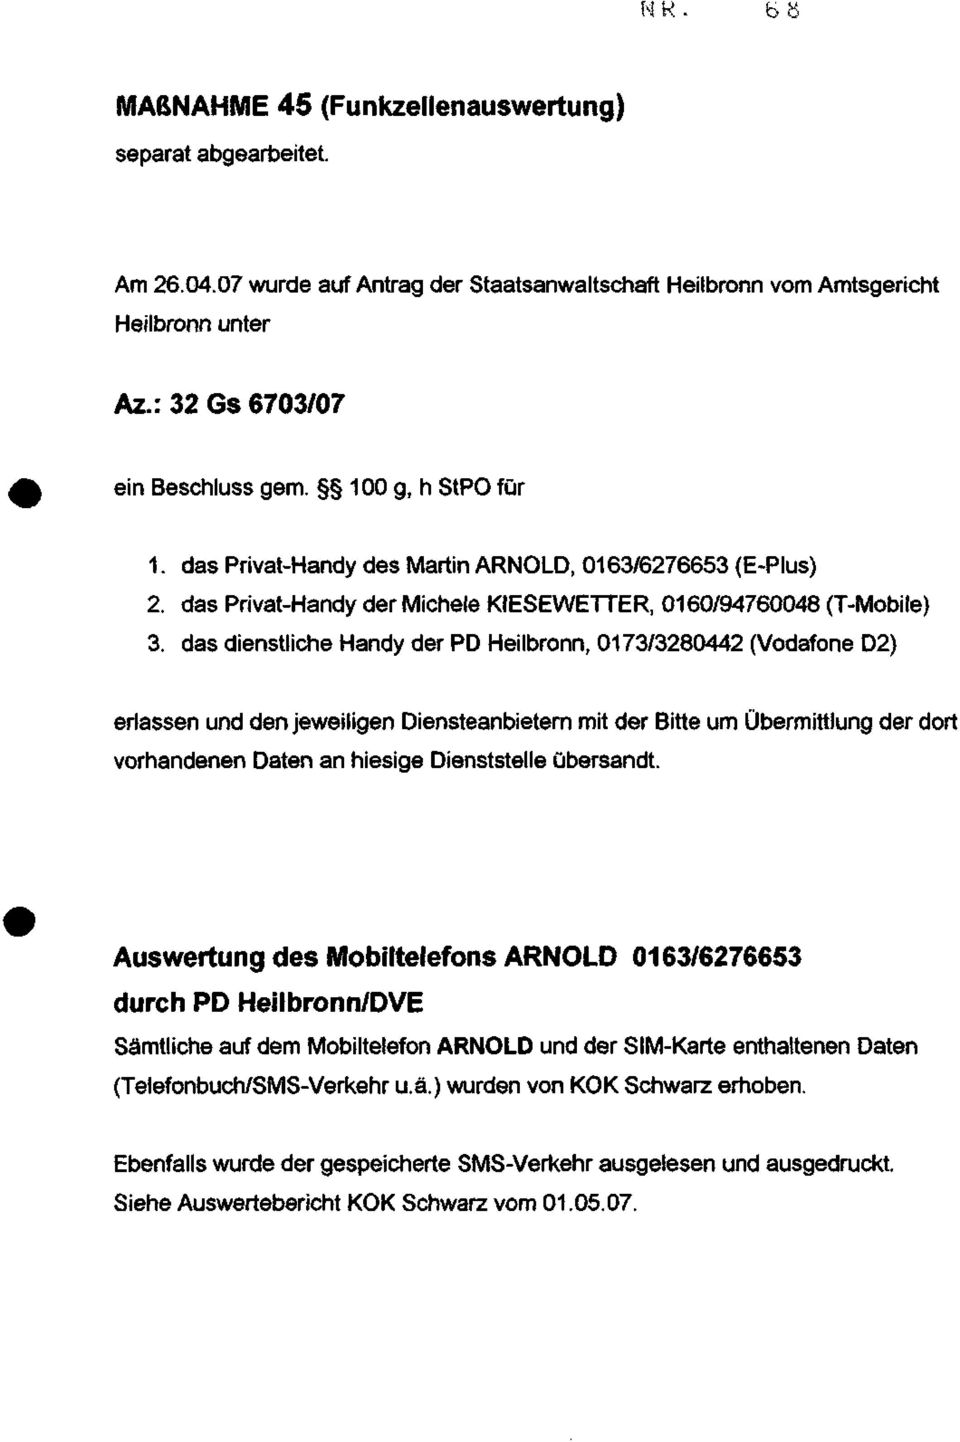 das dienstliche Handy der PD Heilbronn, 0173/3280442 (Vodafone D2) erlassen und den jeweiligen Diensteanbietern mit der Bitte um Übermittlung der dort vorhandenen Daten an hiesige Dienststelle